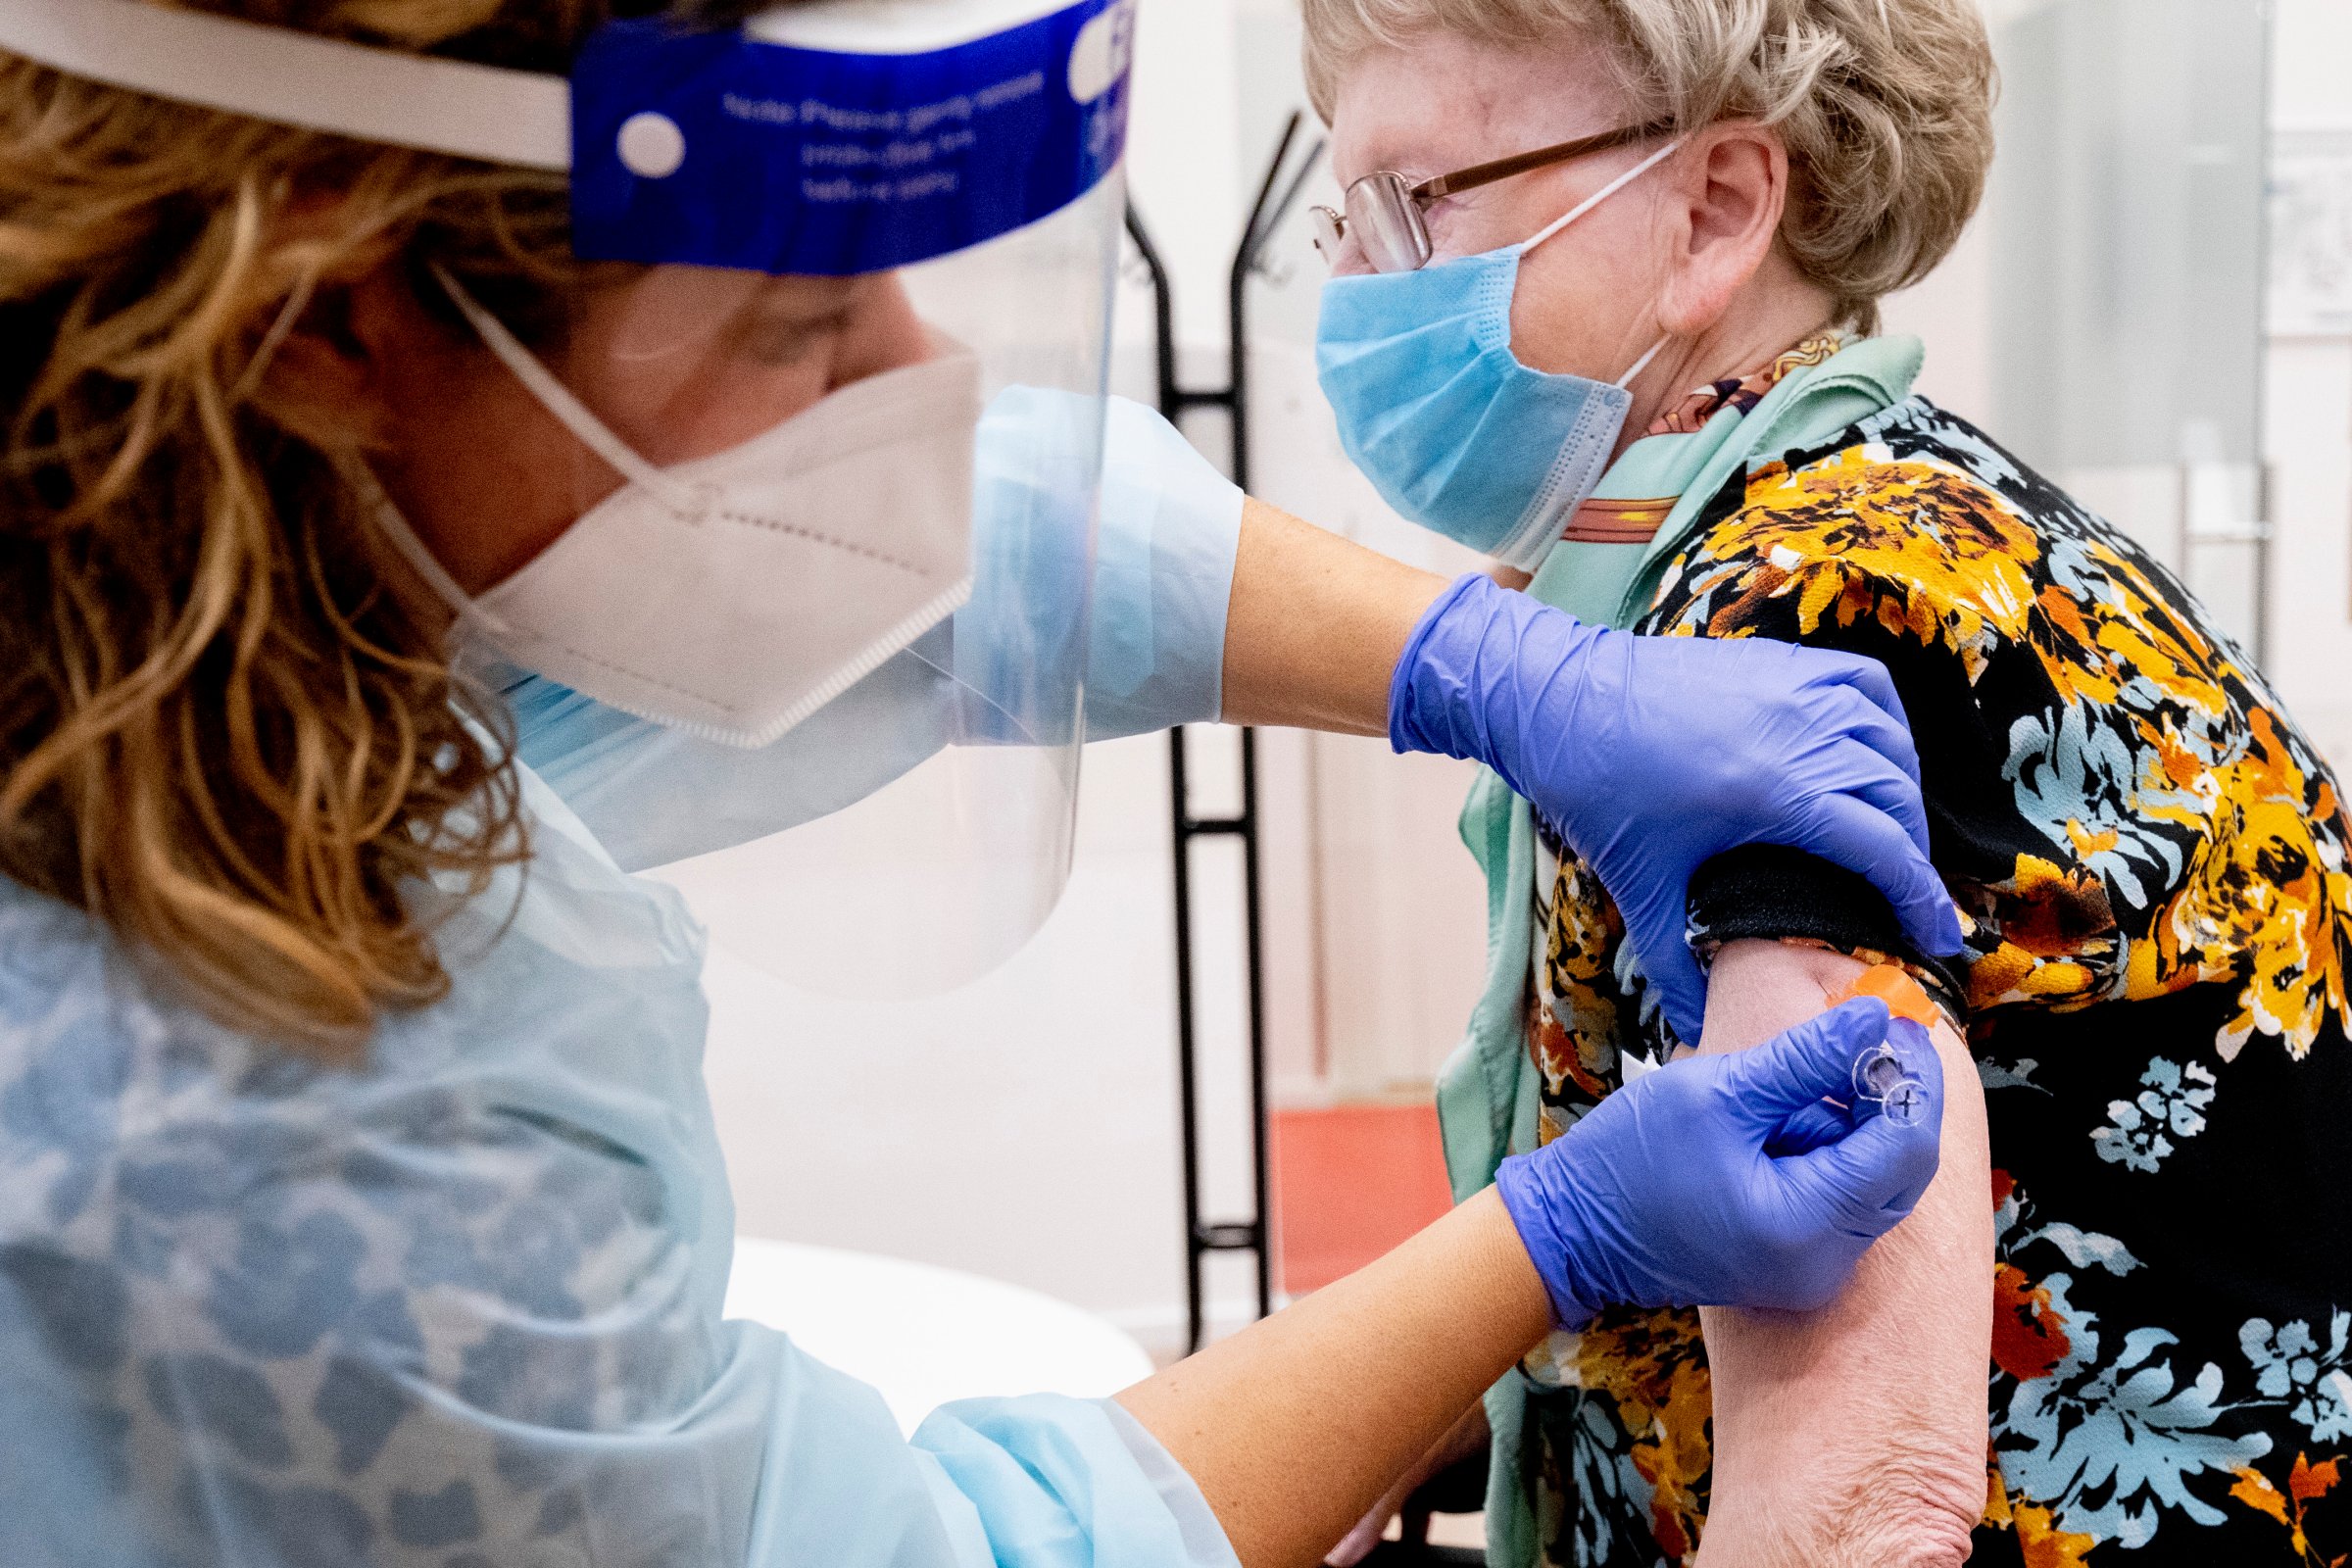 A woman receives an influenza vaccine